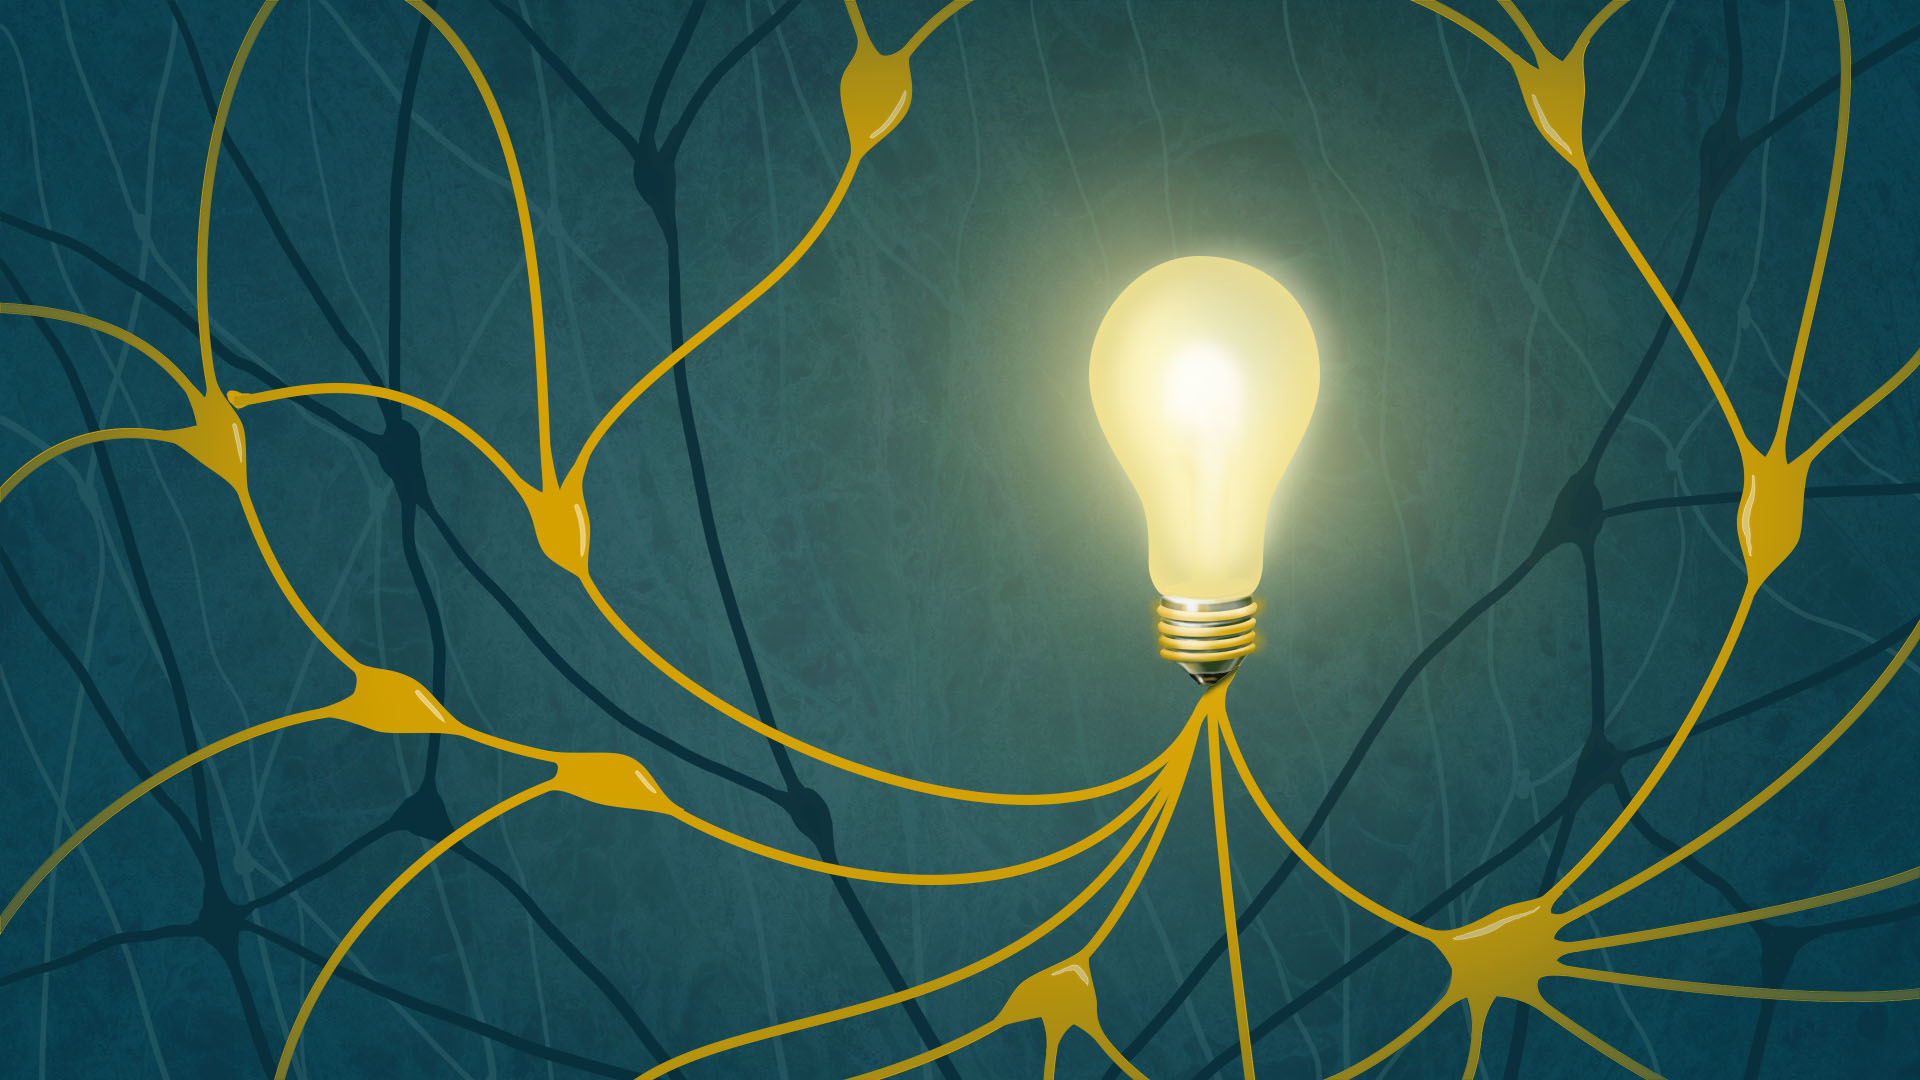 A network of cartoon neurons link to a lit light bulb